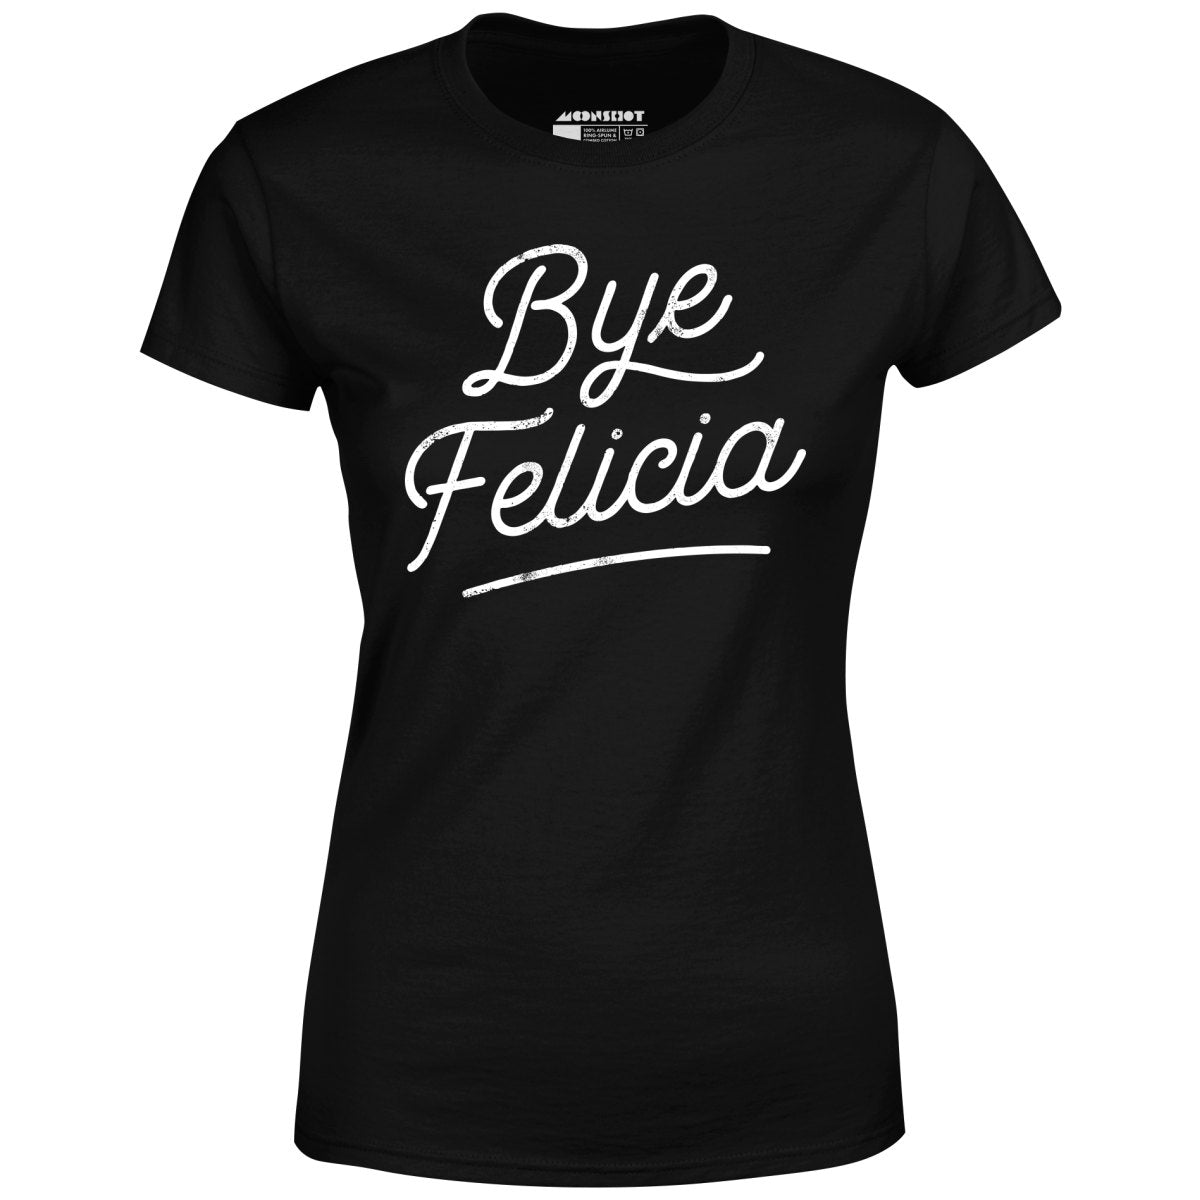 Bye Felicia - Women's T-Shirt